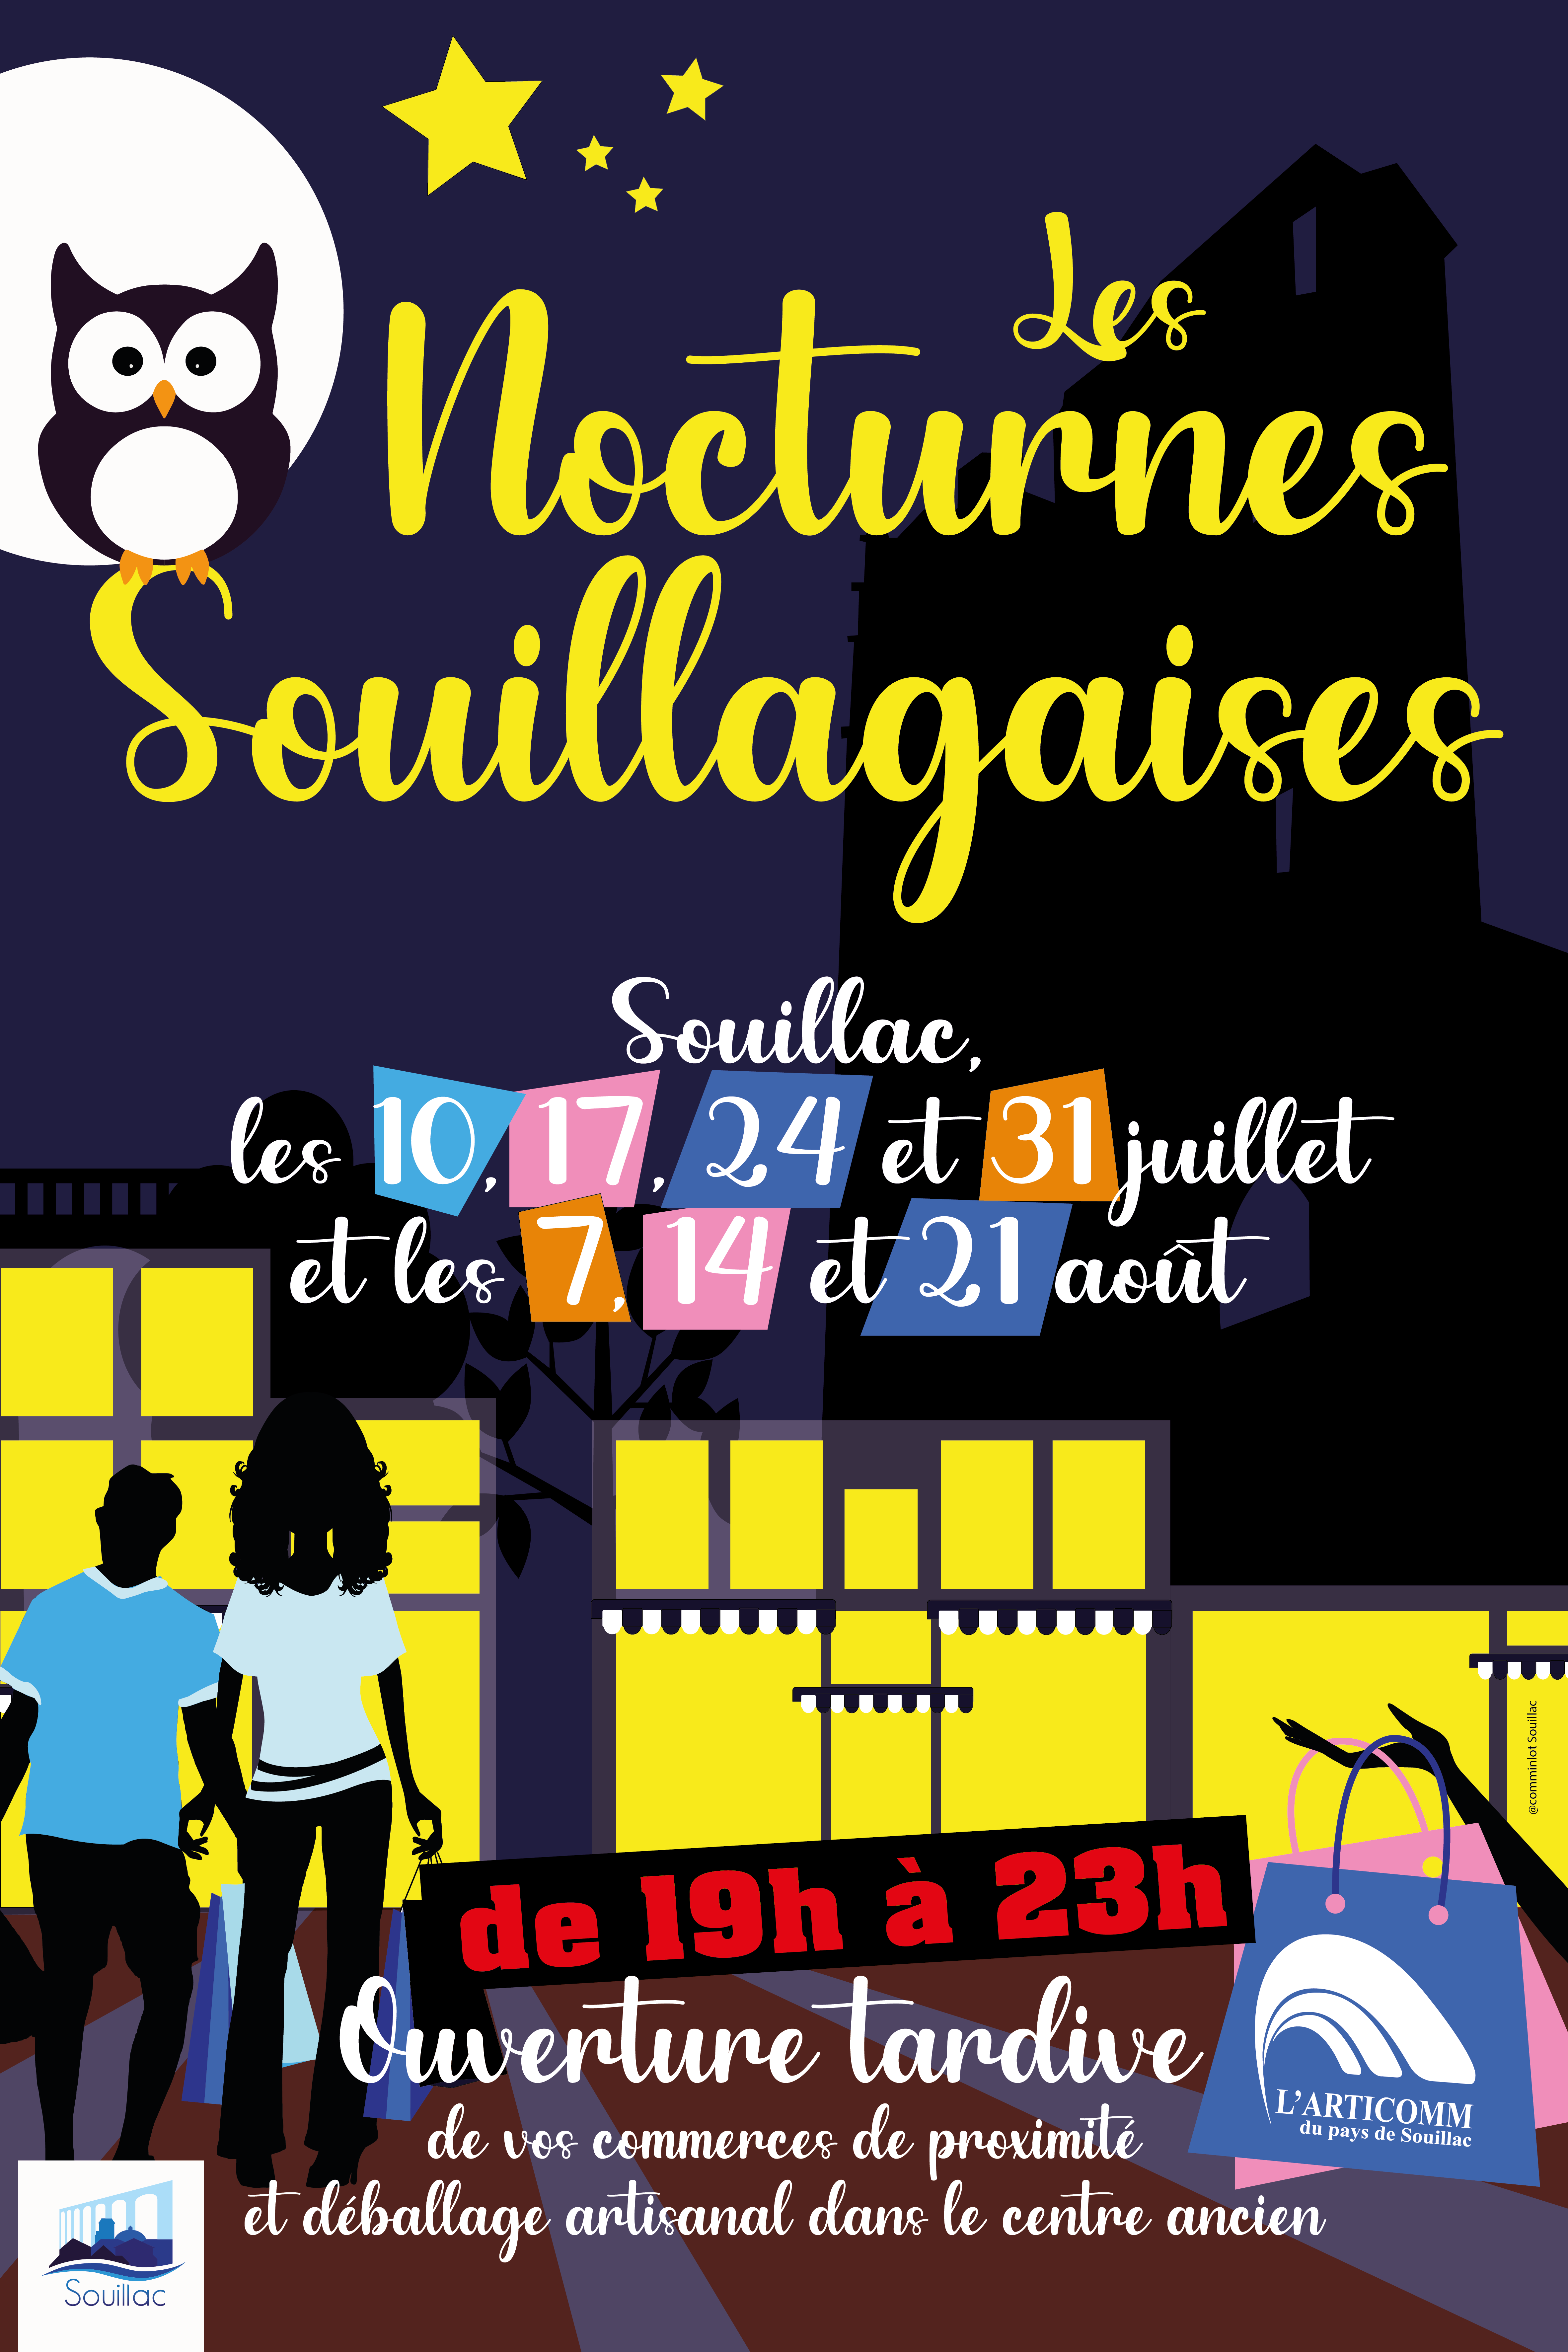 nocturnes_souillagaises_souillac